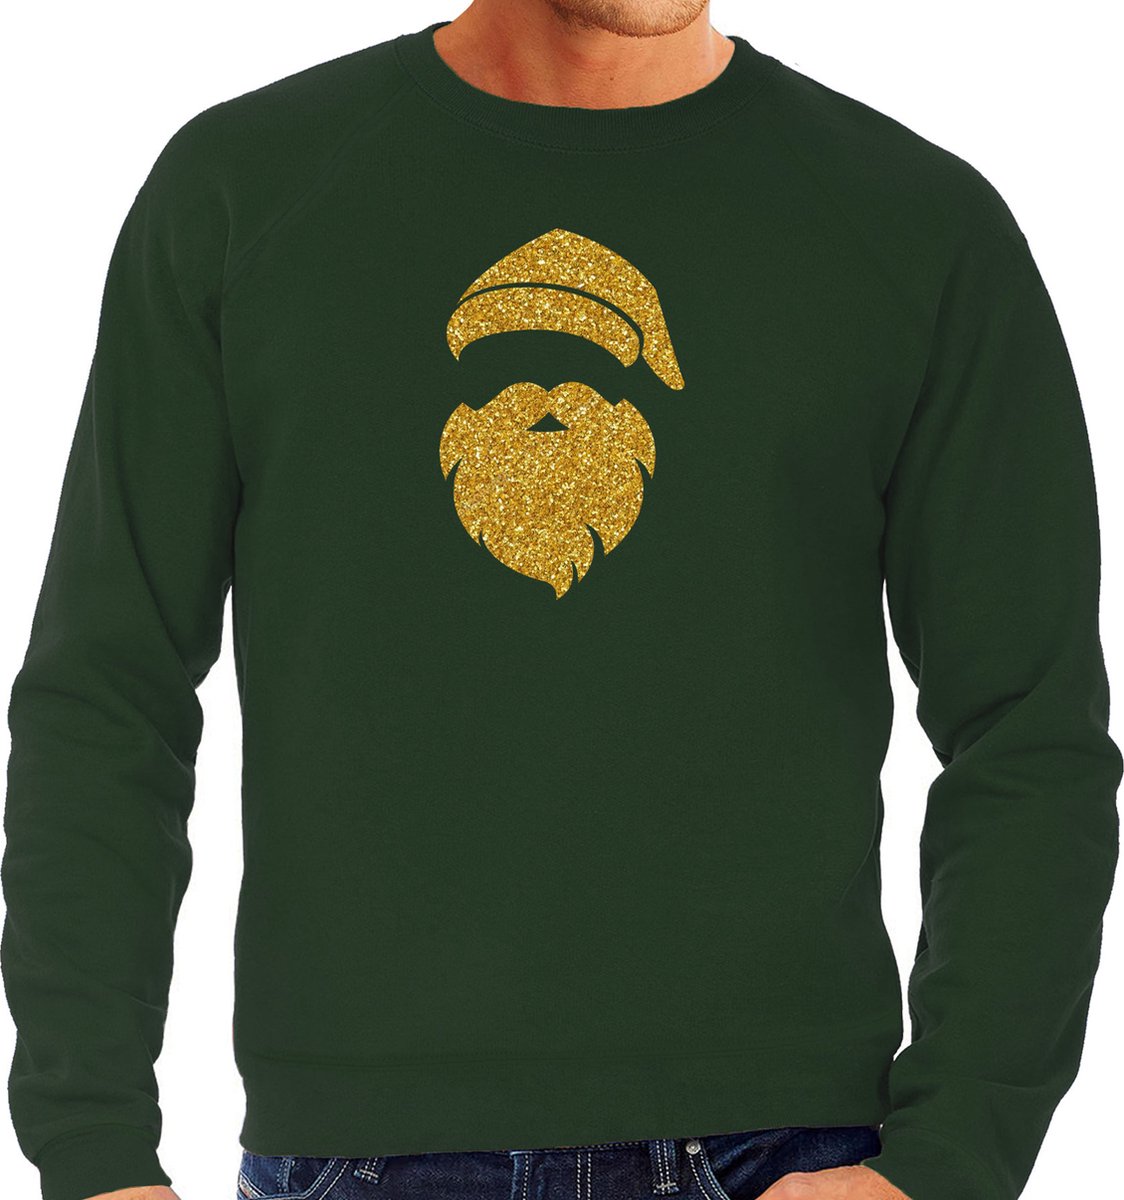 Kerstman hoofd Kerst trui - groen met gouden glitter bedrukking - heren - Kerst sweaters / Kerst outfit L